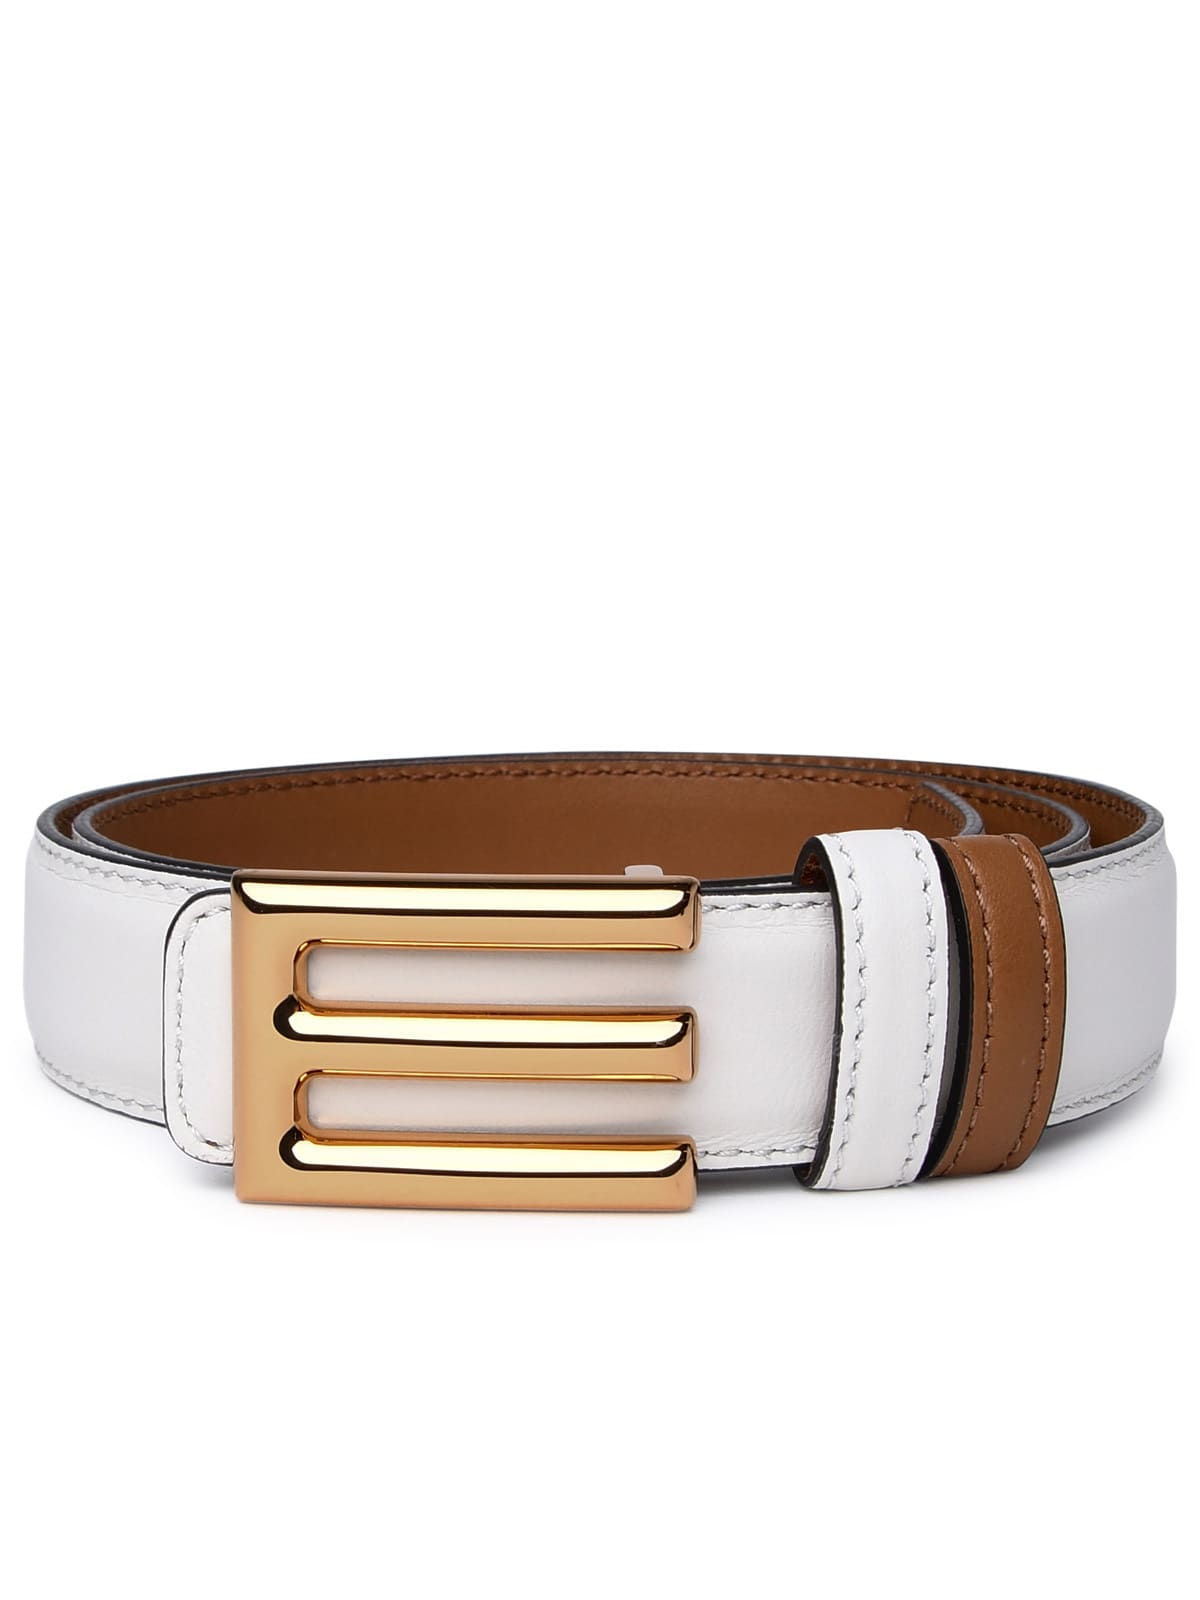 Etro Ivory Leather Belt